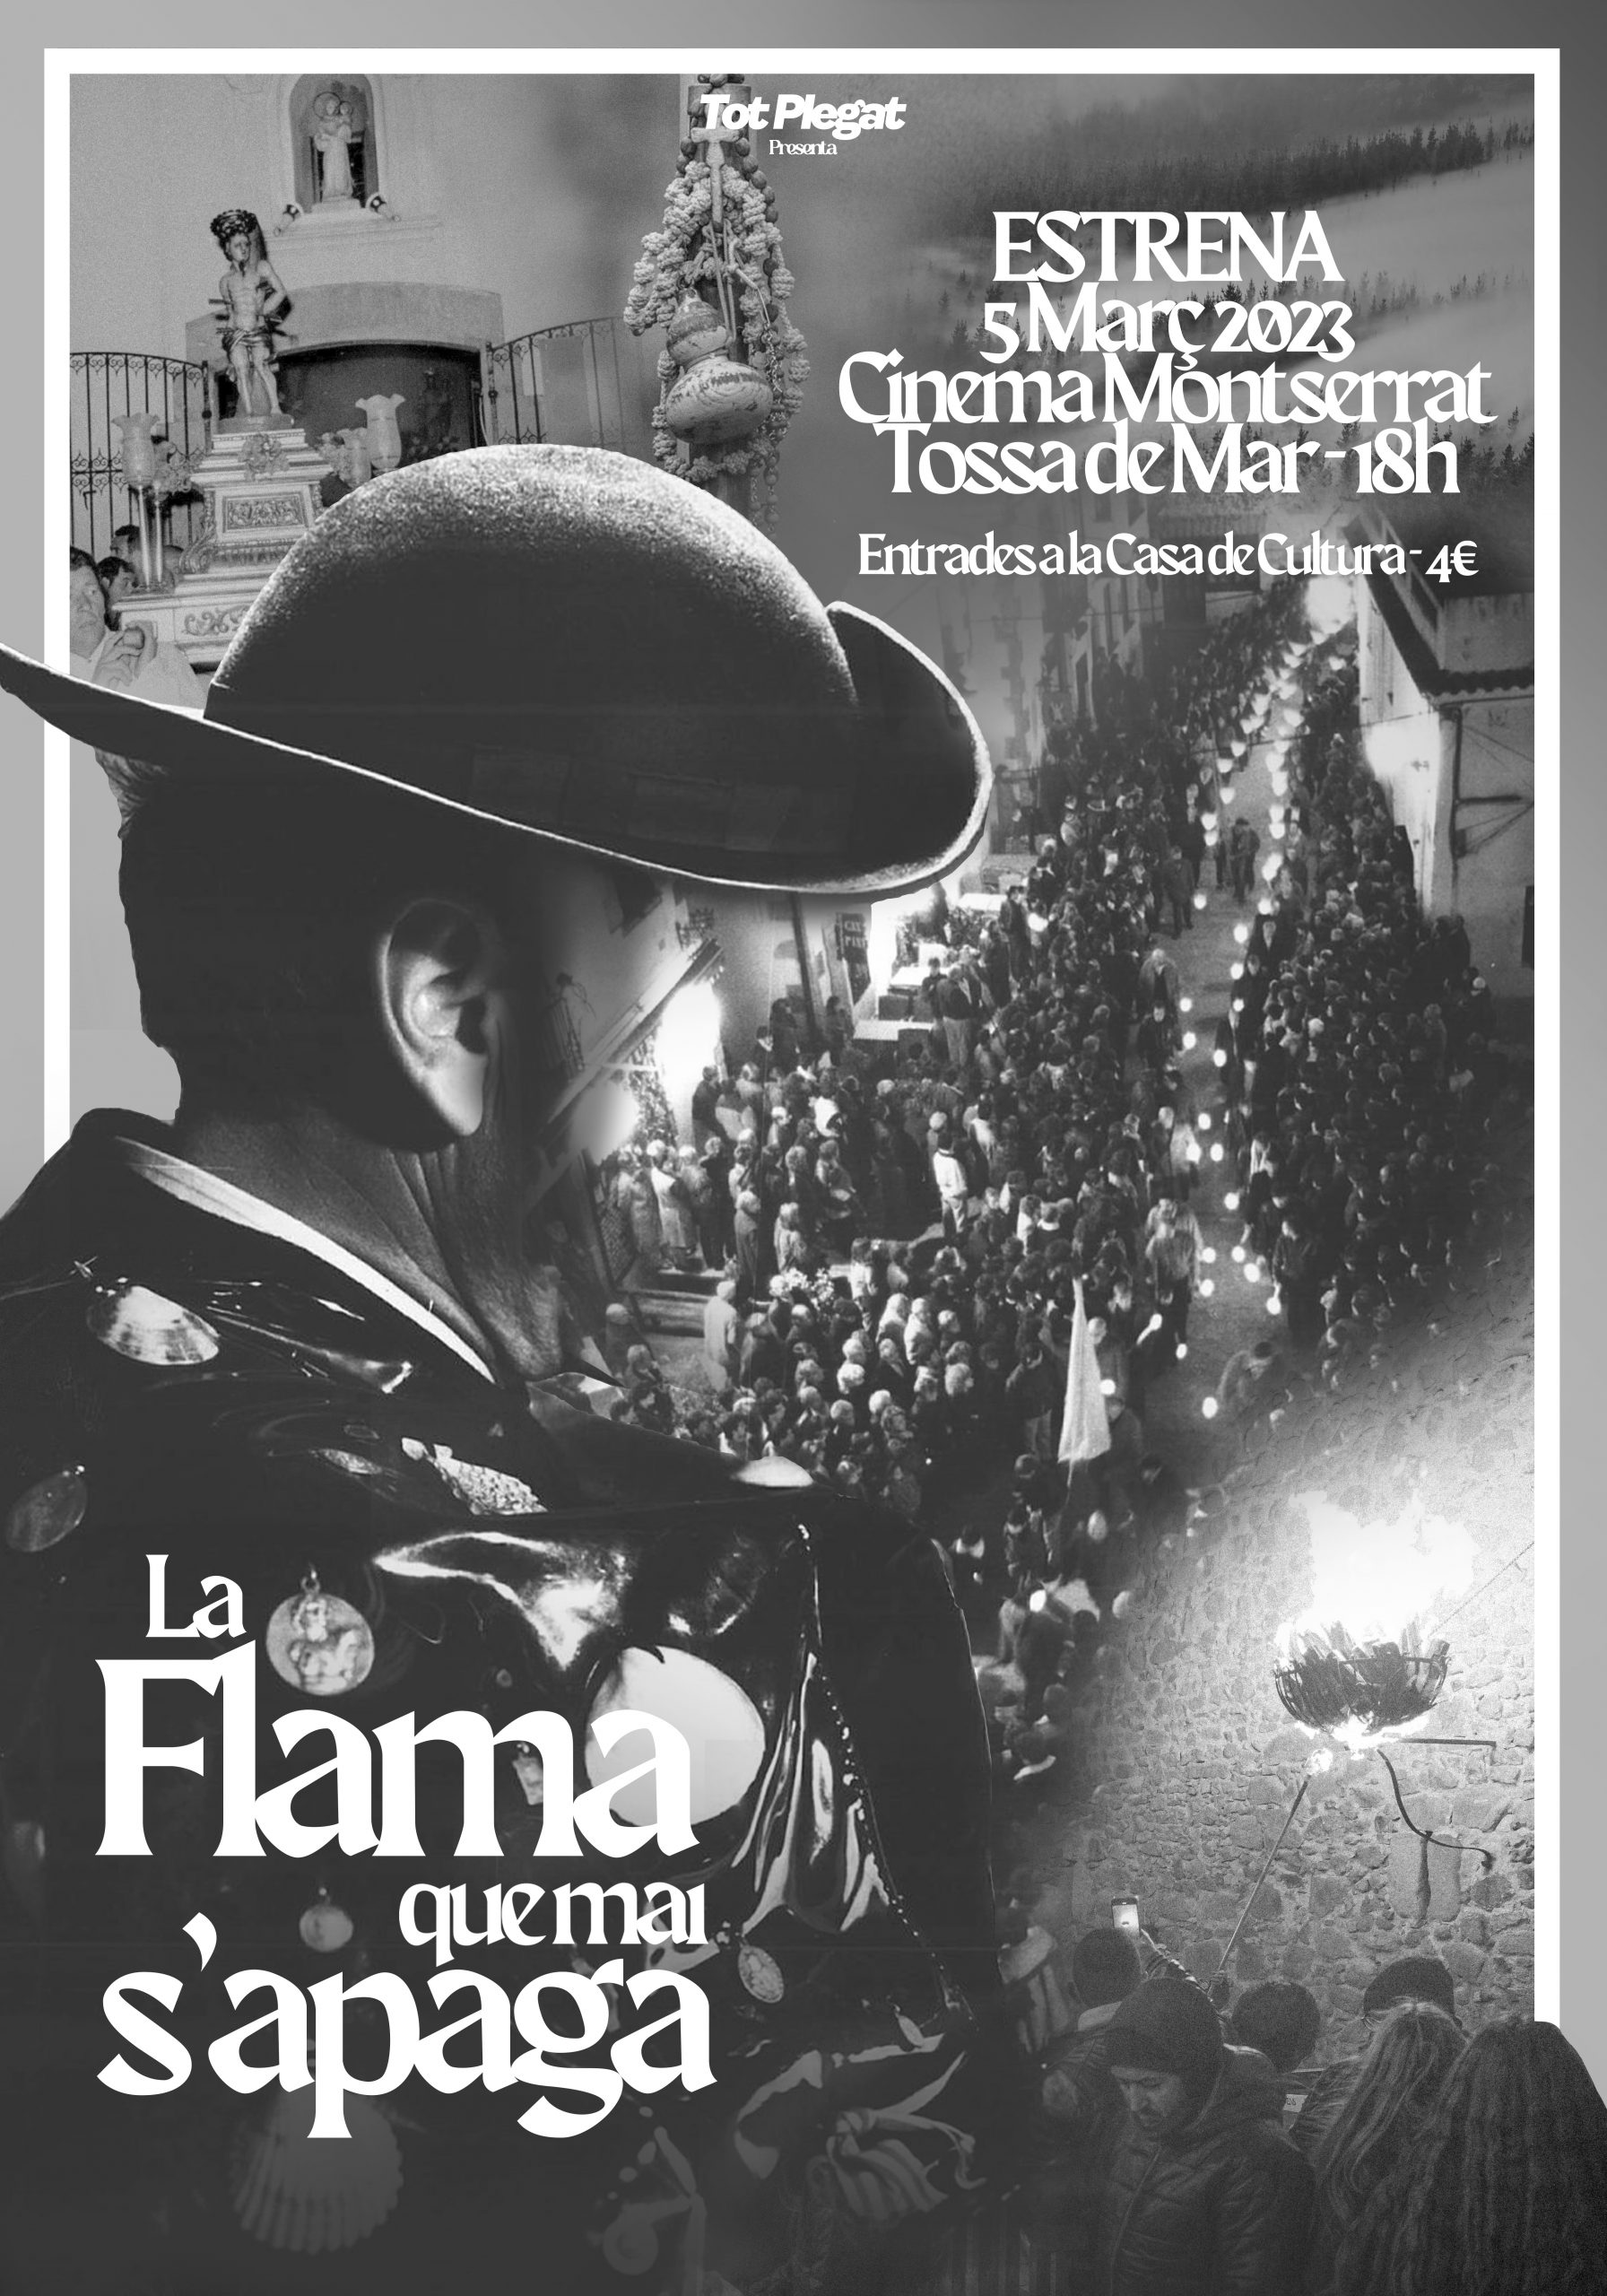 La-Flama-que-mai-sapaga-PosterPromo-scaled-1 1